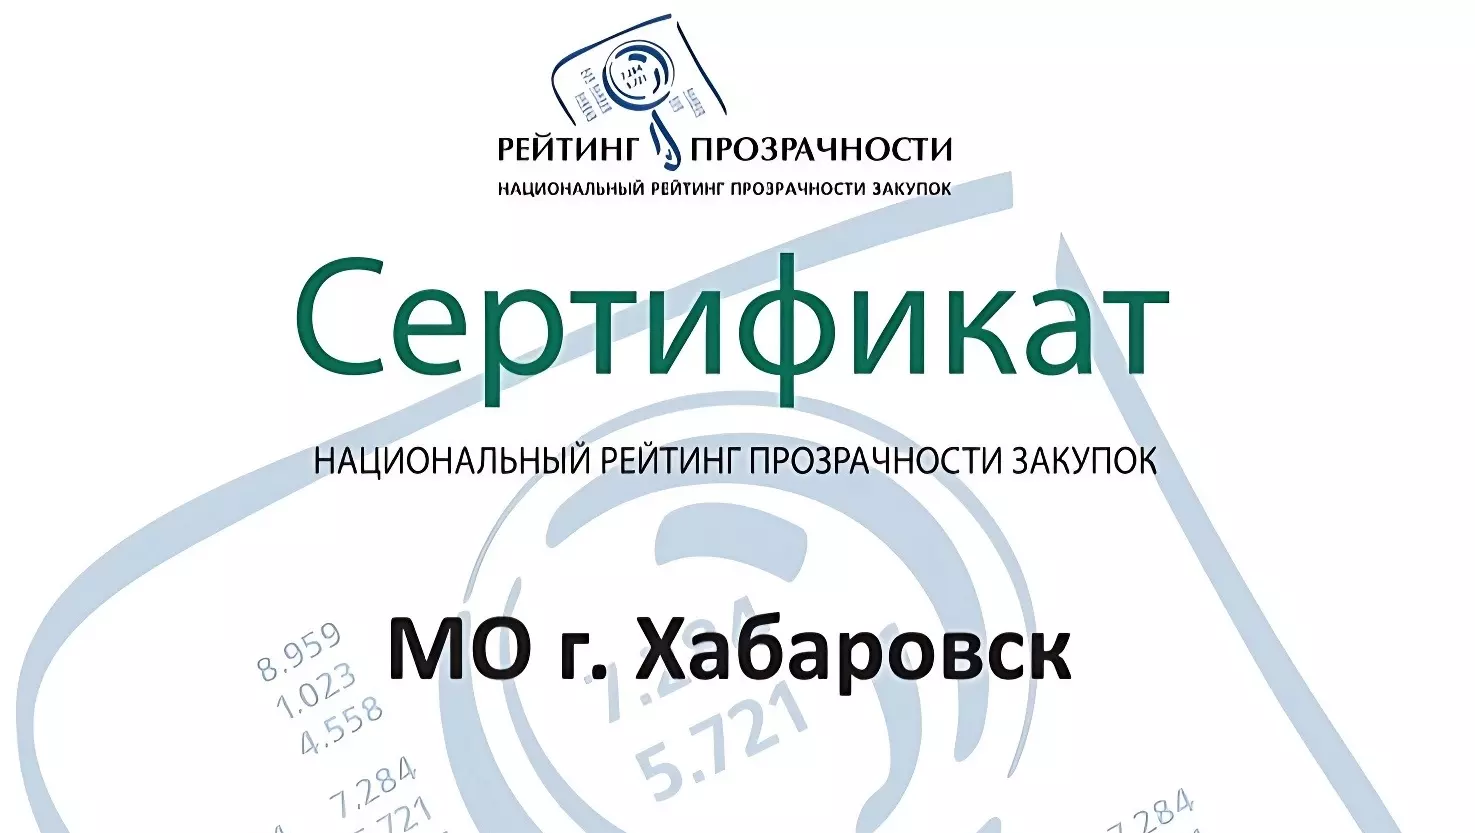 Хабаровск в 12-й раз вошел в число городов — лидеров рейтинга прозрачности закупок